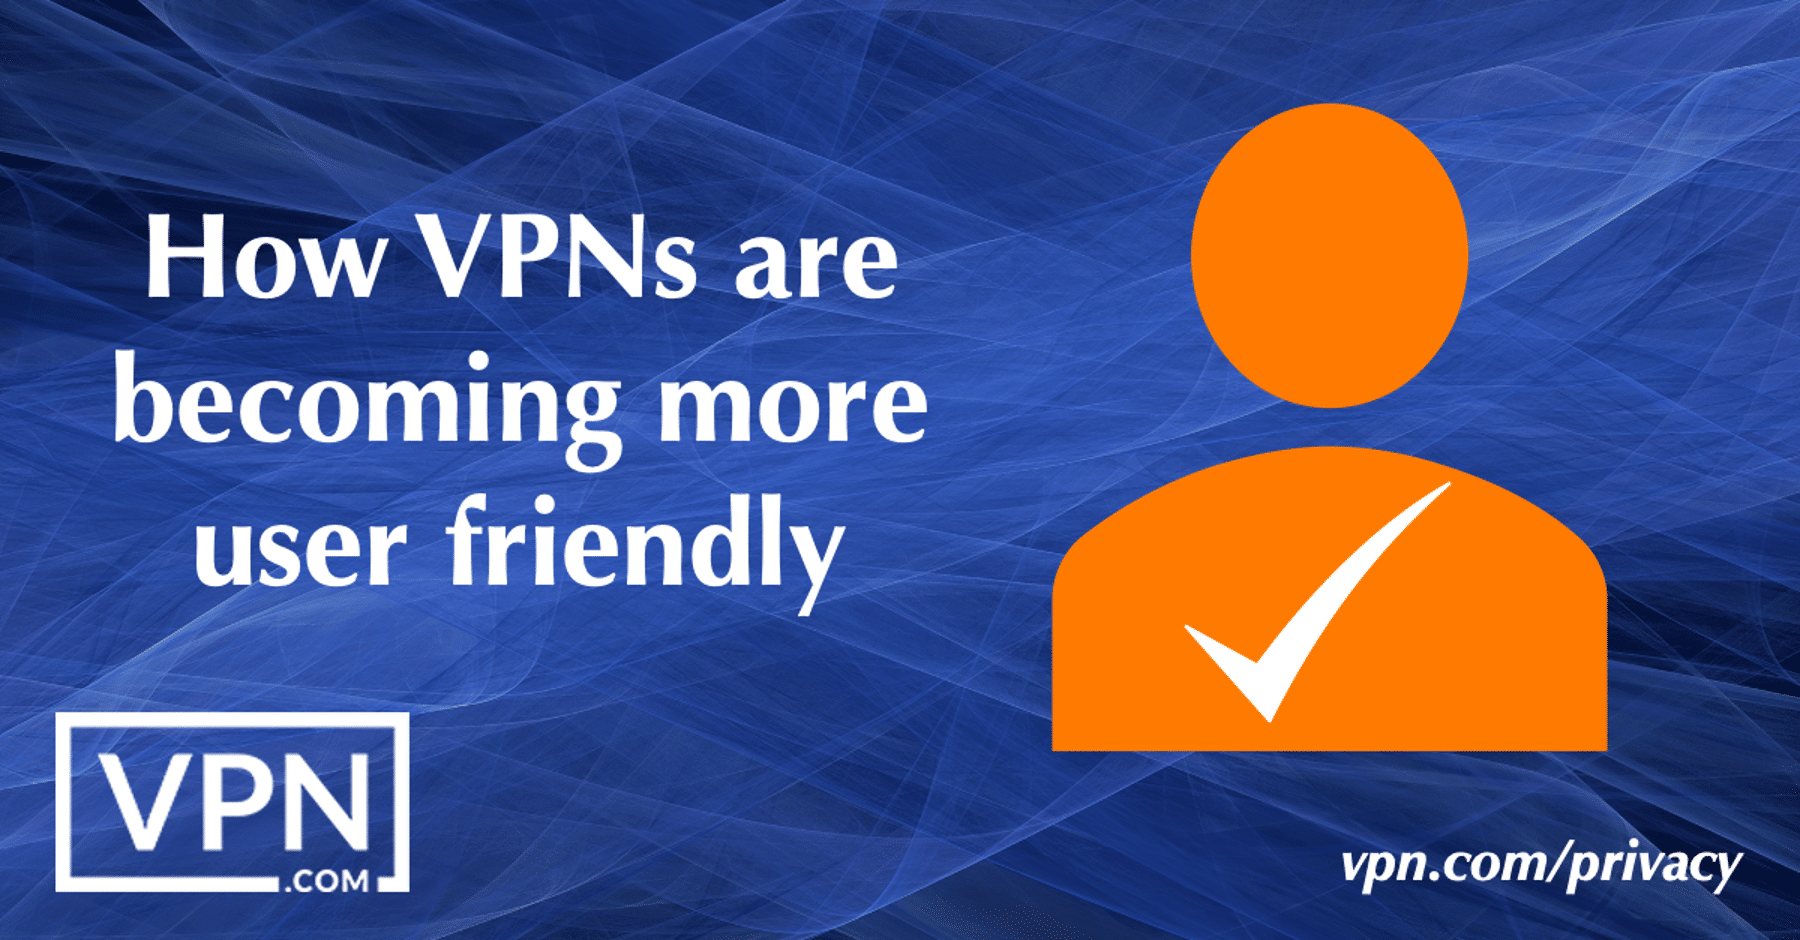 Как VPN становятся более удобными для пользователей.